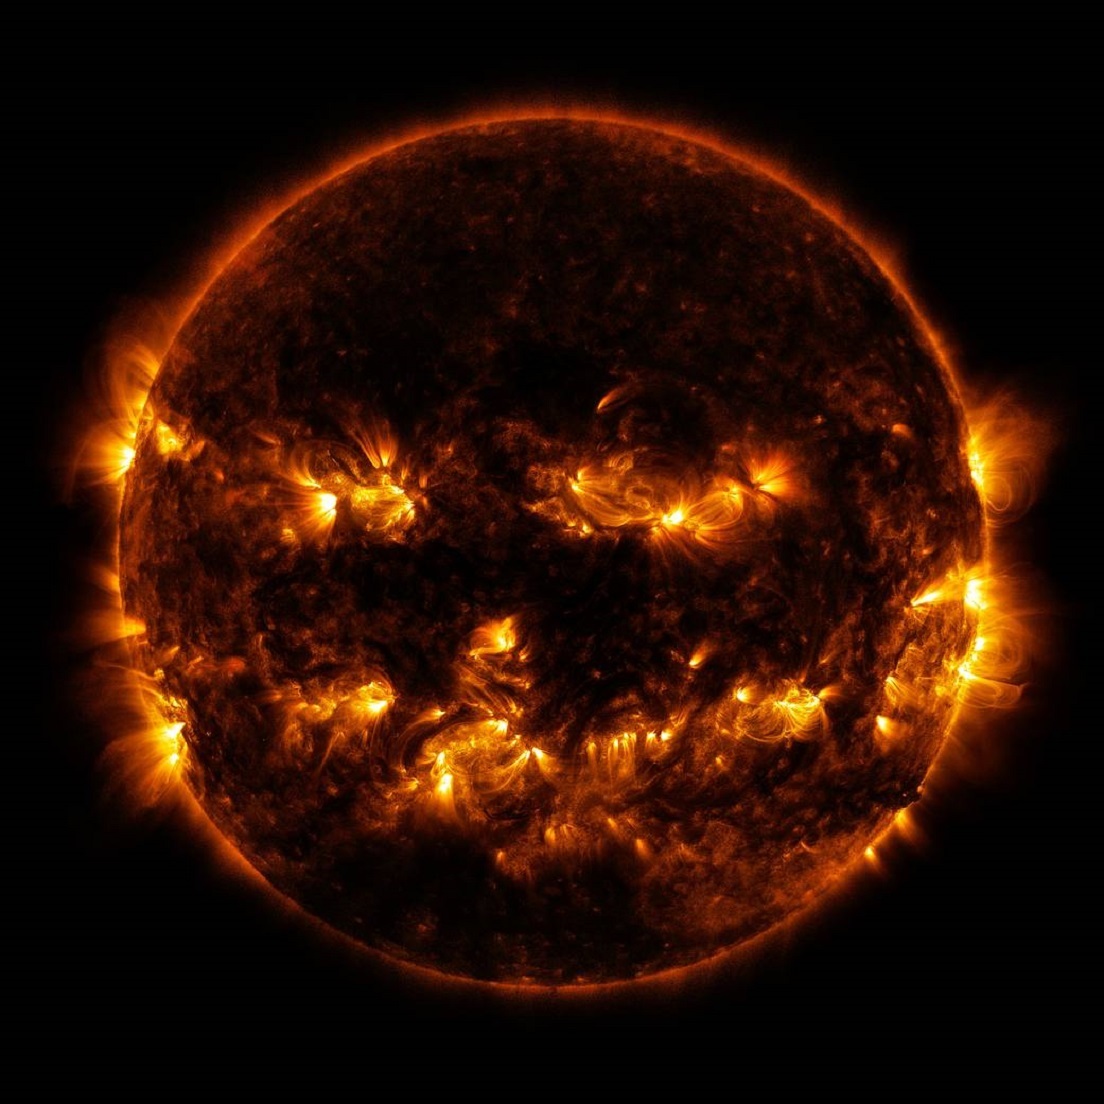 La NASA muestra la cara “terrorífica” del Sol 